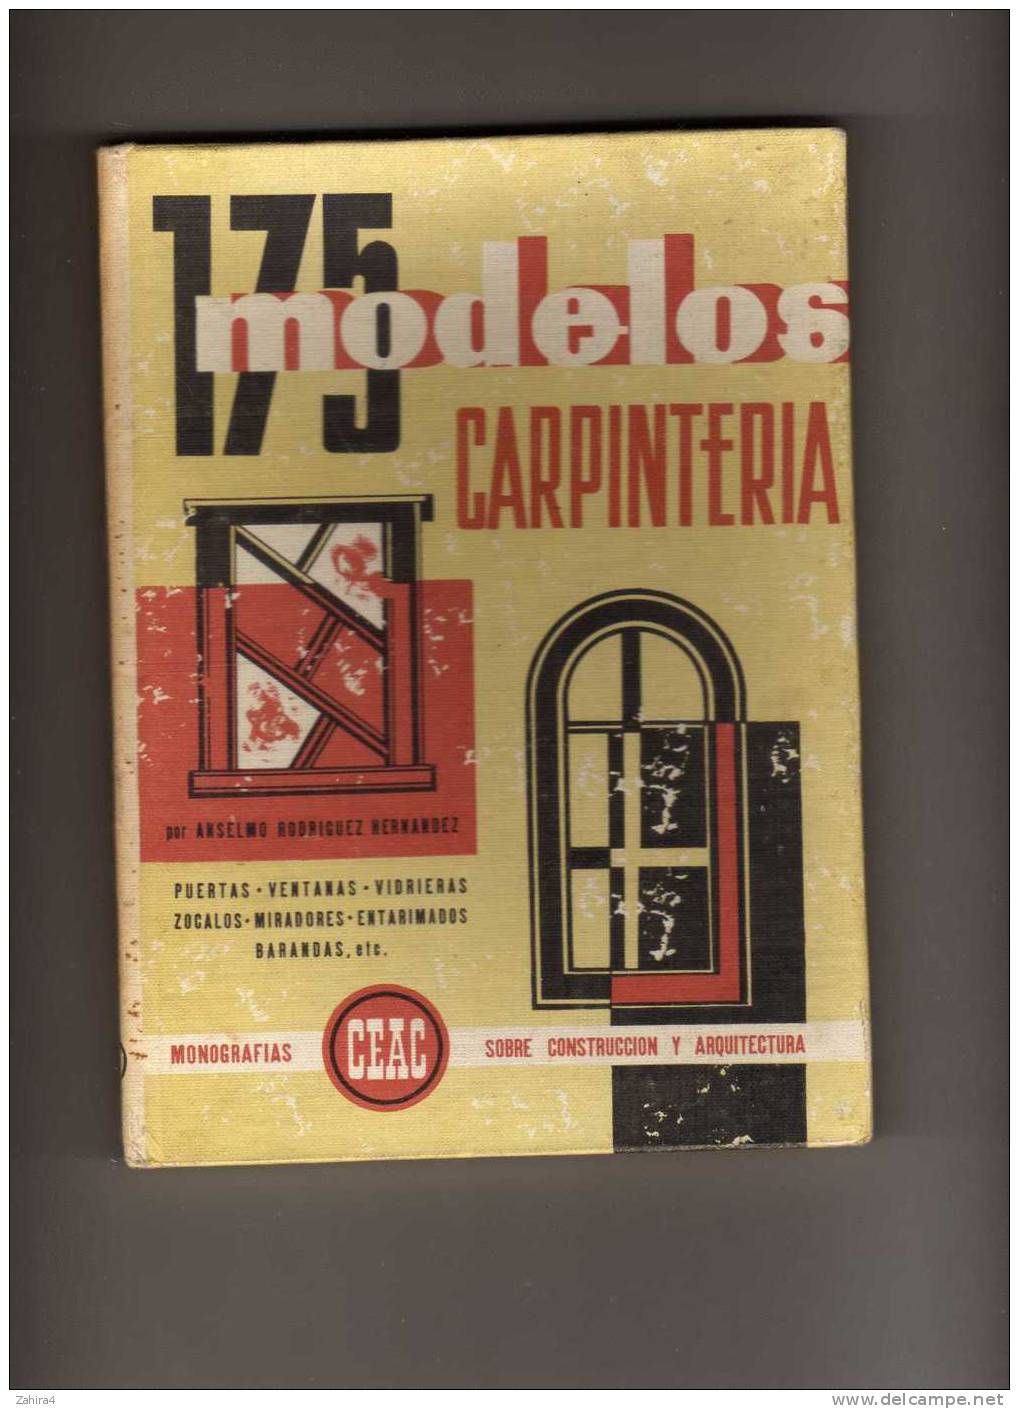 Carpinteria  -  175 Modelos Por Anselmo Rodriguez Hernandez - Monografias CEAC - Pratique